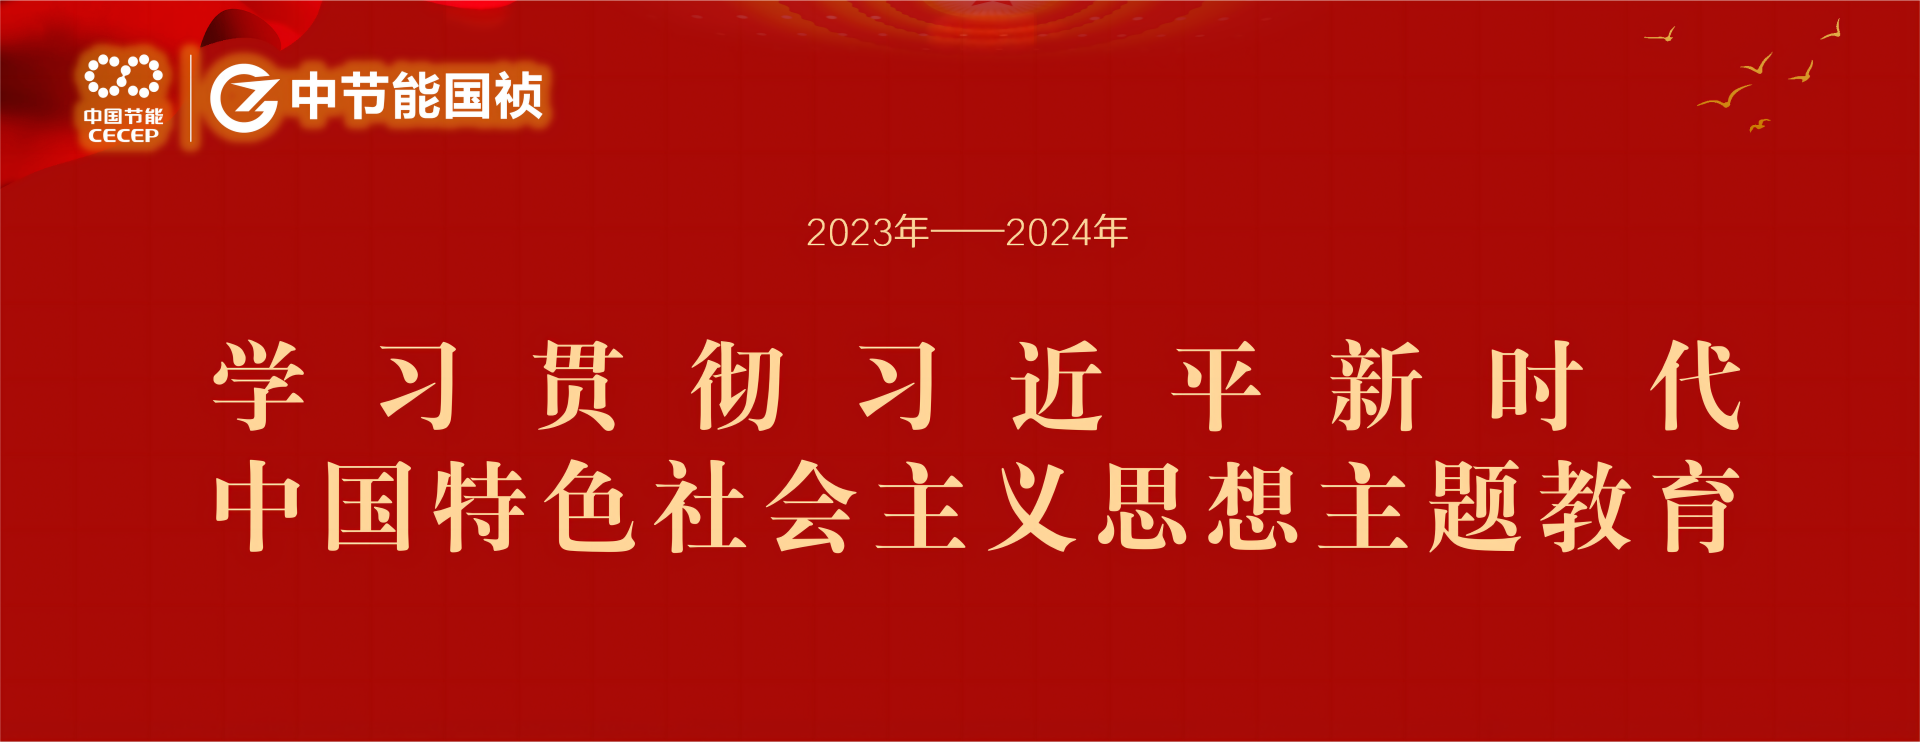 金沙js9999777学习贯彻习近平新时代中国特色社会主义思想主题教育